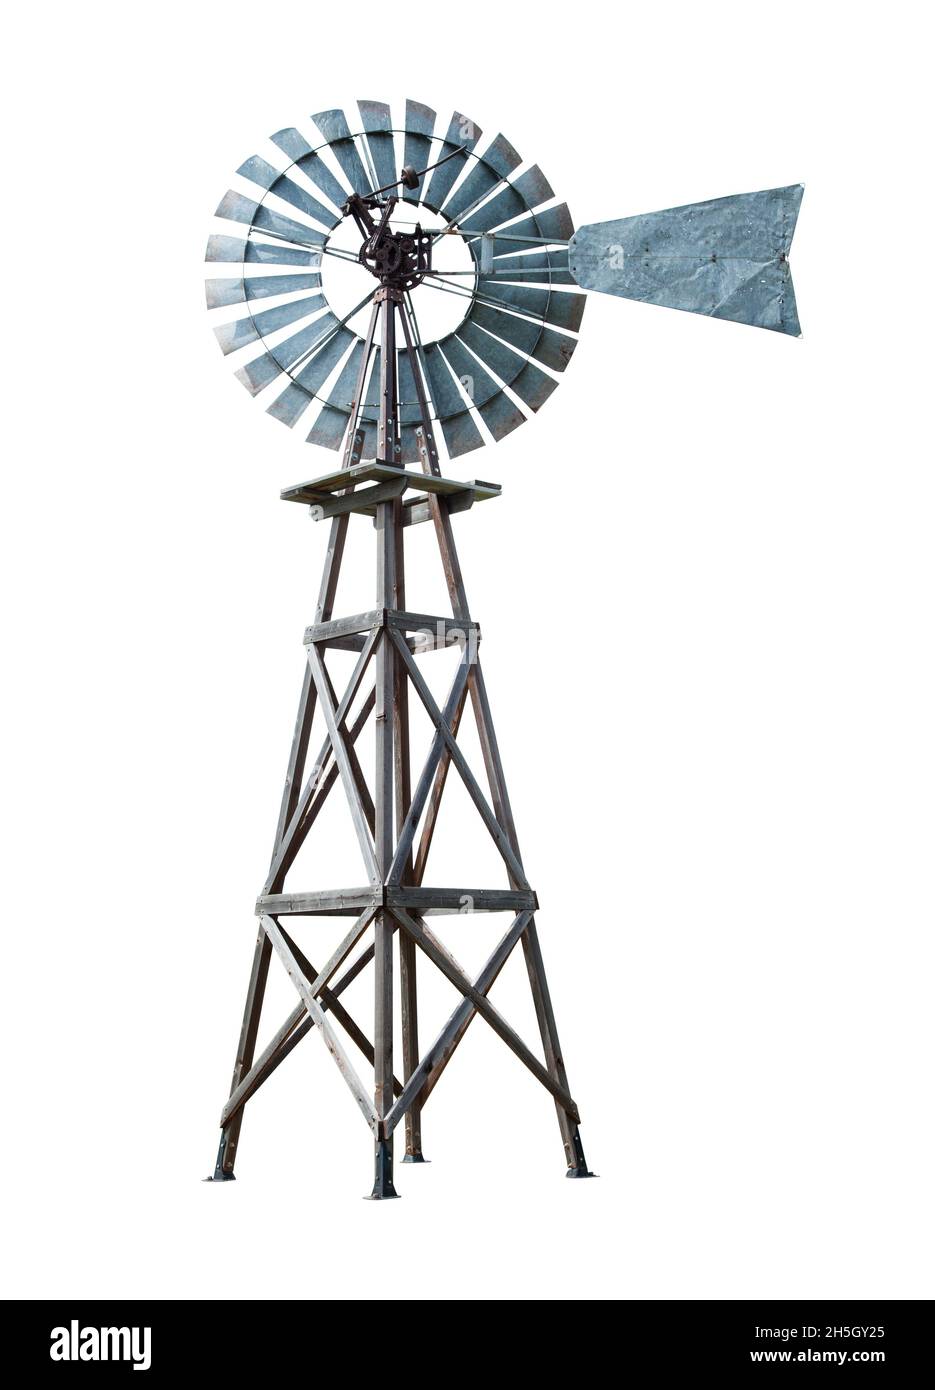 Vieille ferme coupe de turbine de pompe à eau de moulin à vent sur blanc. Banque D'Images